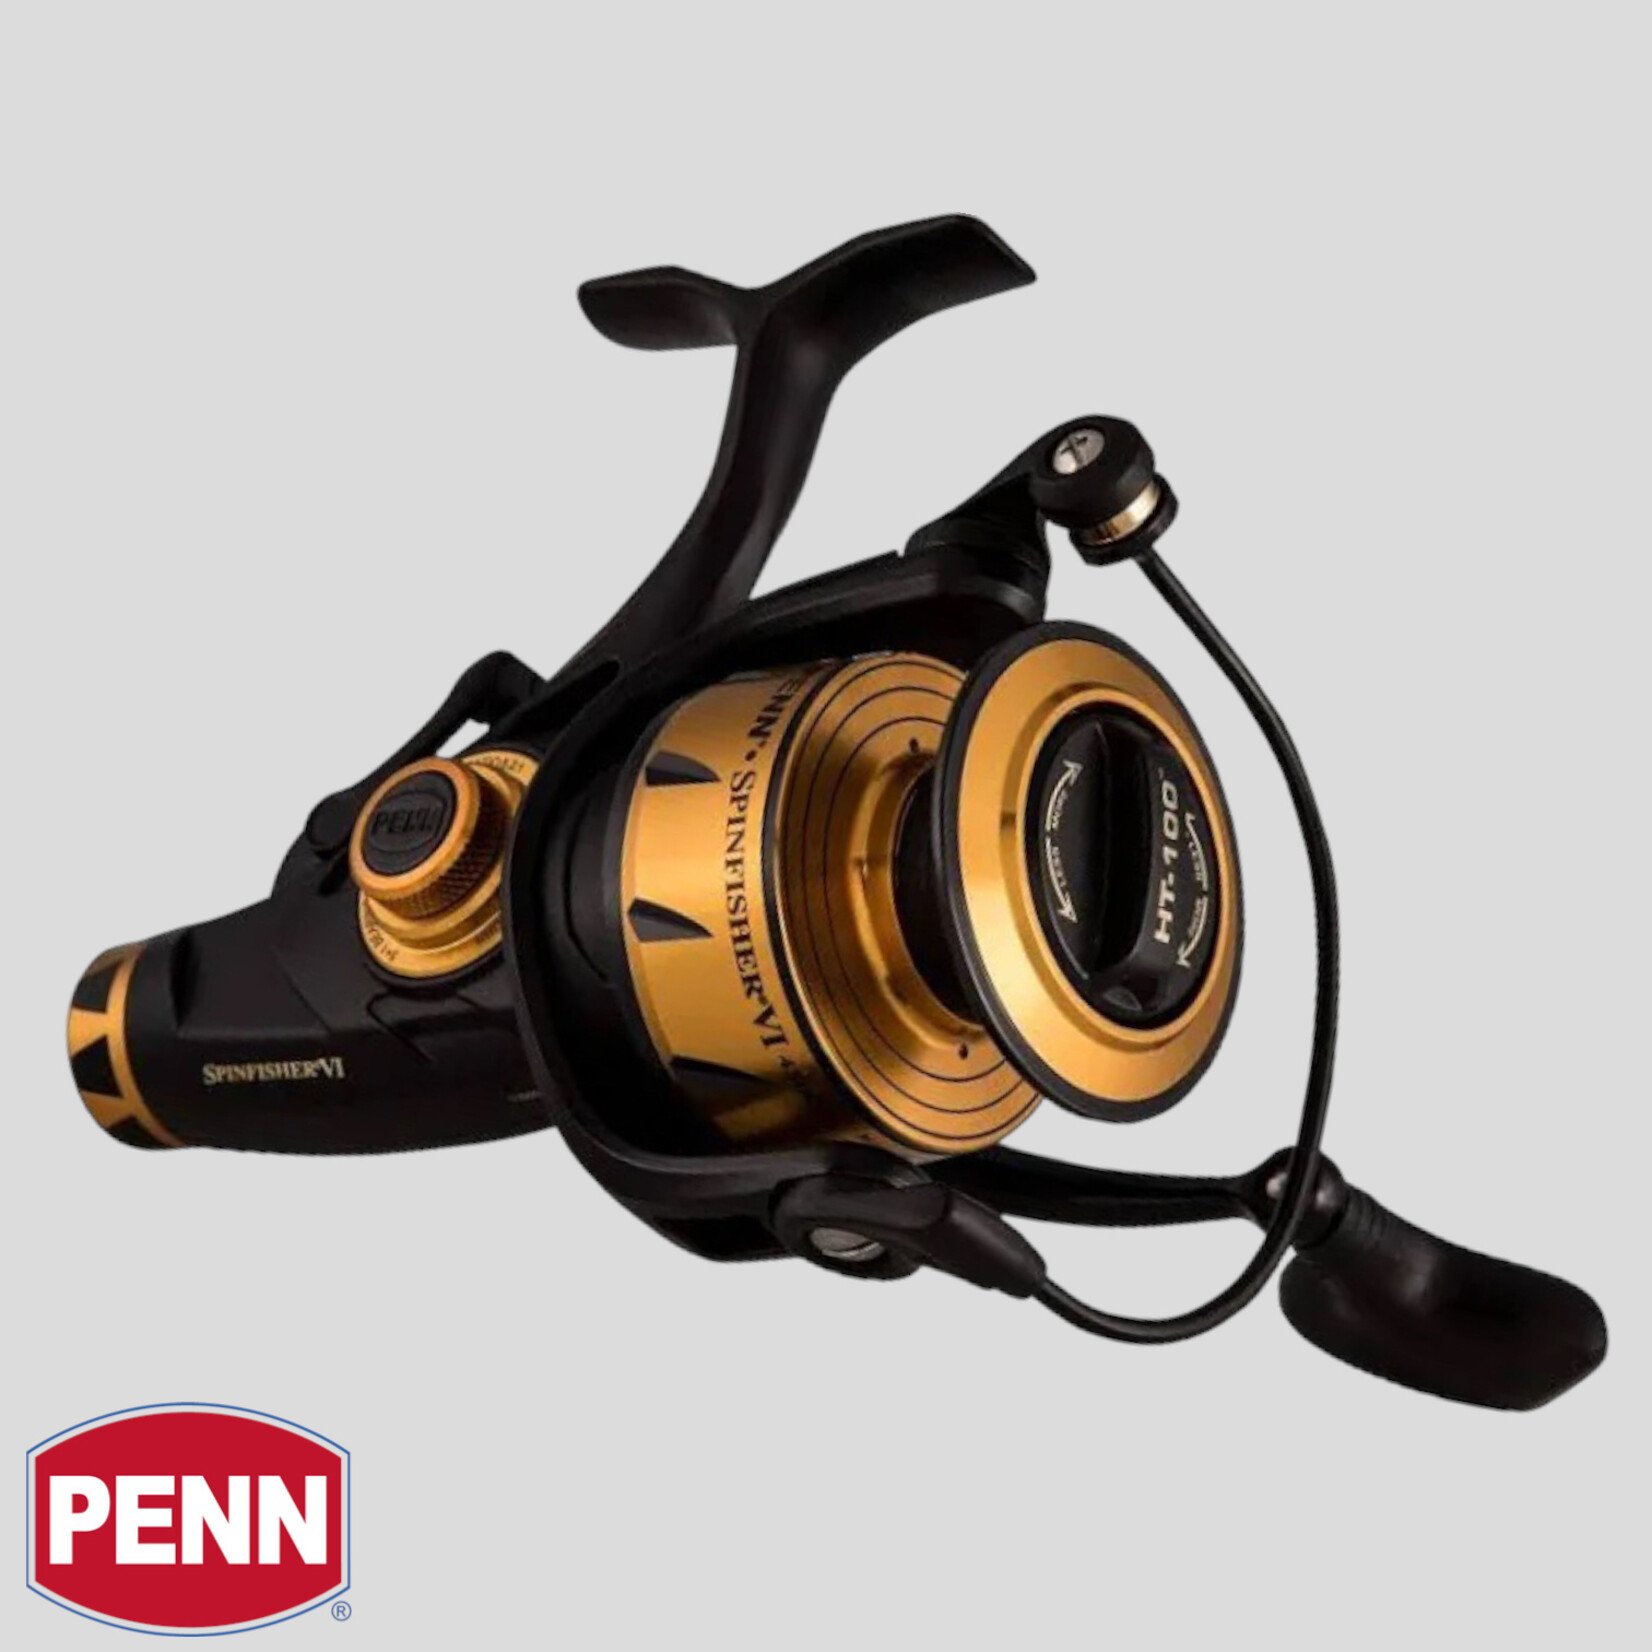 Penn Penn Spinfisher VI Live Liner Spinning Reel